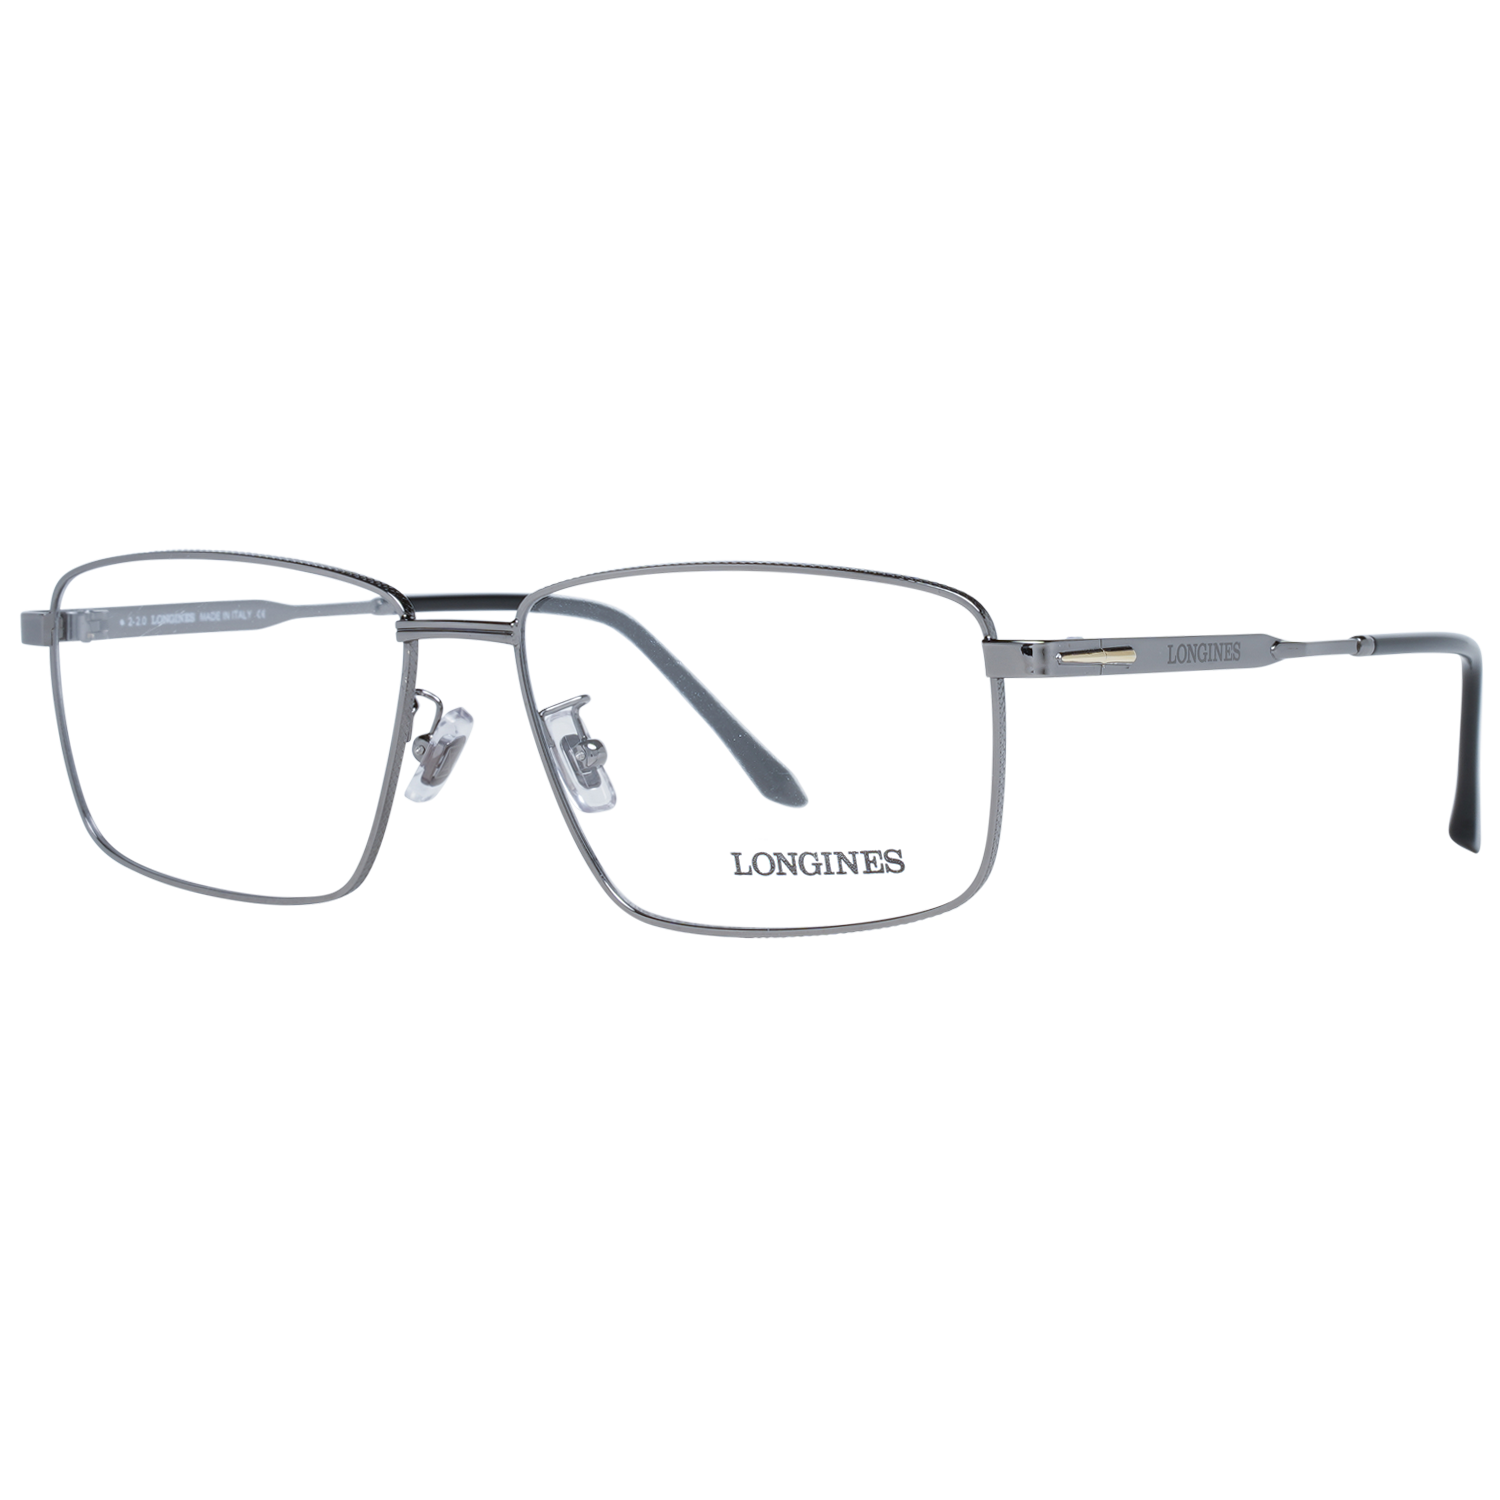 Longines Frames Longines Optical Frame LG5017-H 008 57 Eyeglasses Eyewear UK USA Australia 